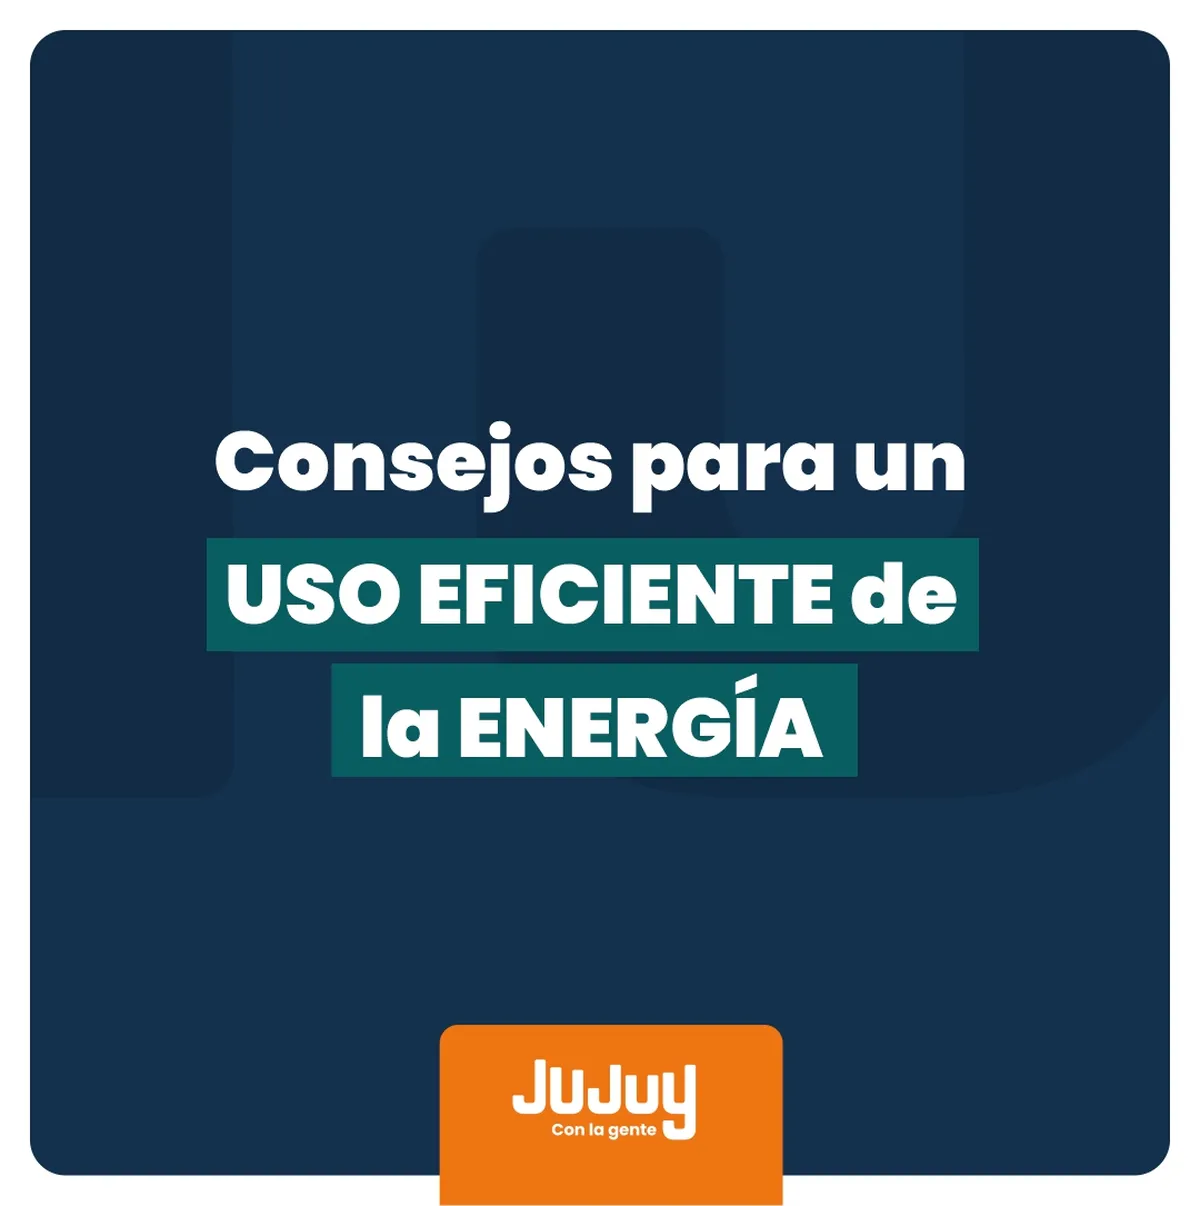 ‘Energía, yo te cuido’ . ‘Energía, yo te cuido’ recuerda acciones para la eficiencia energética en hogares